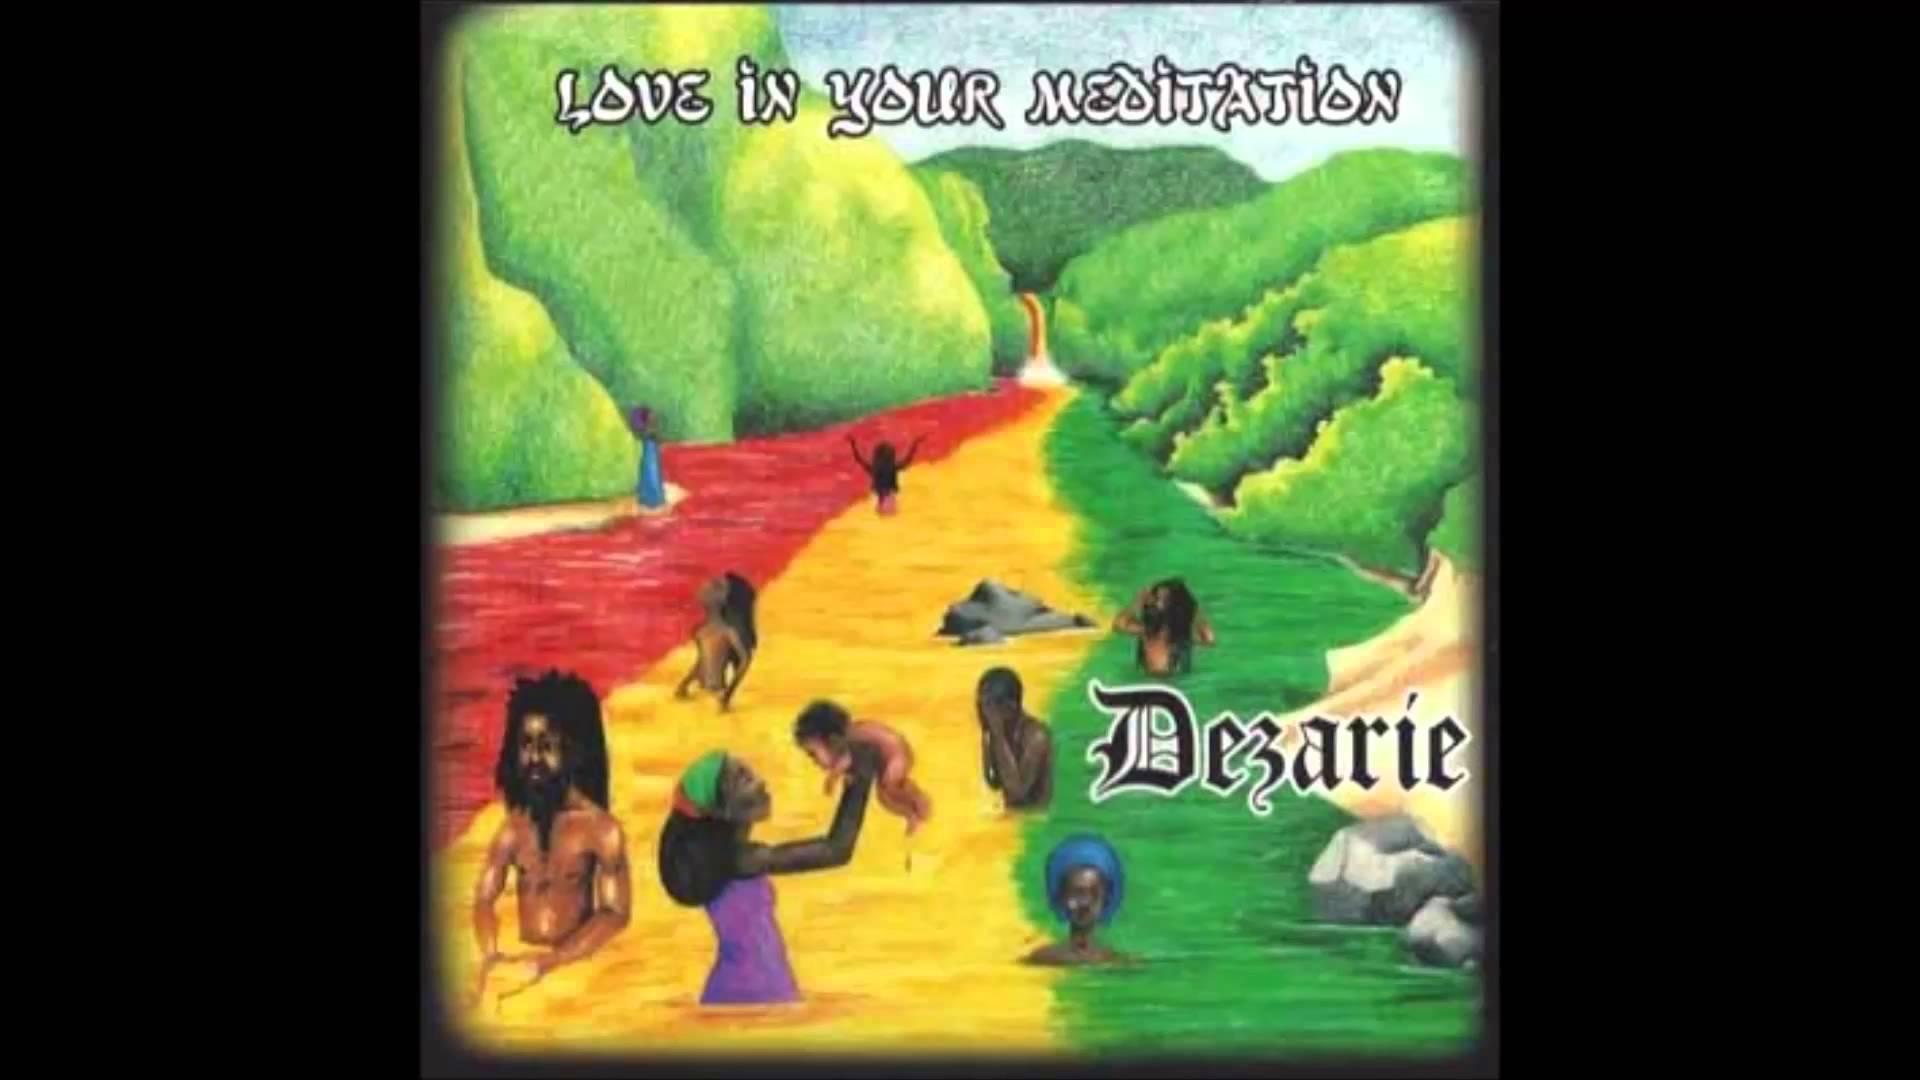 Dezarie - Keep Praising Jah - YouTube